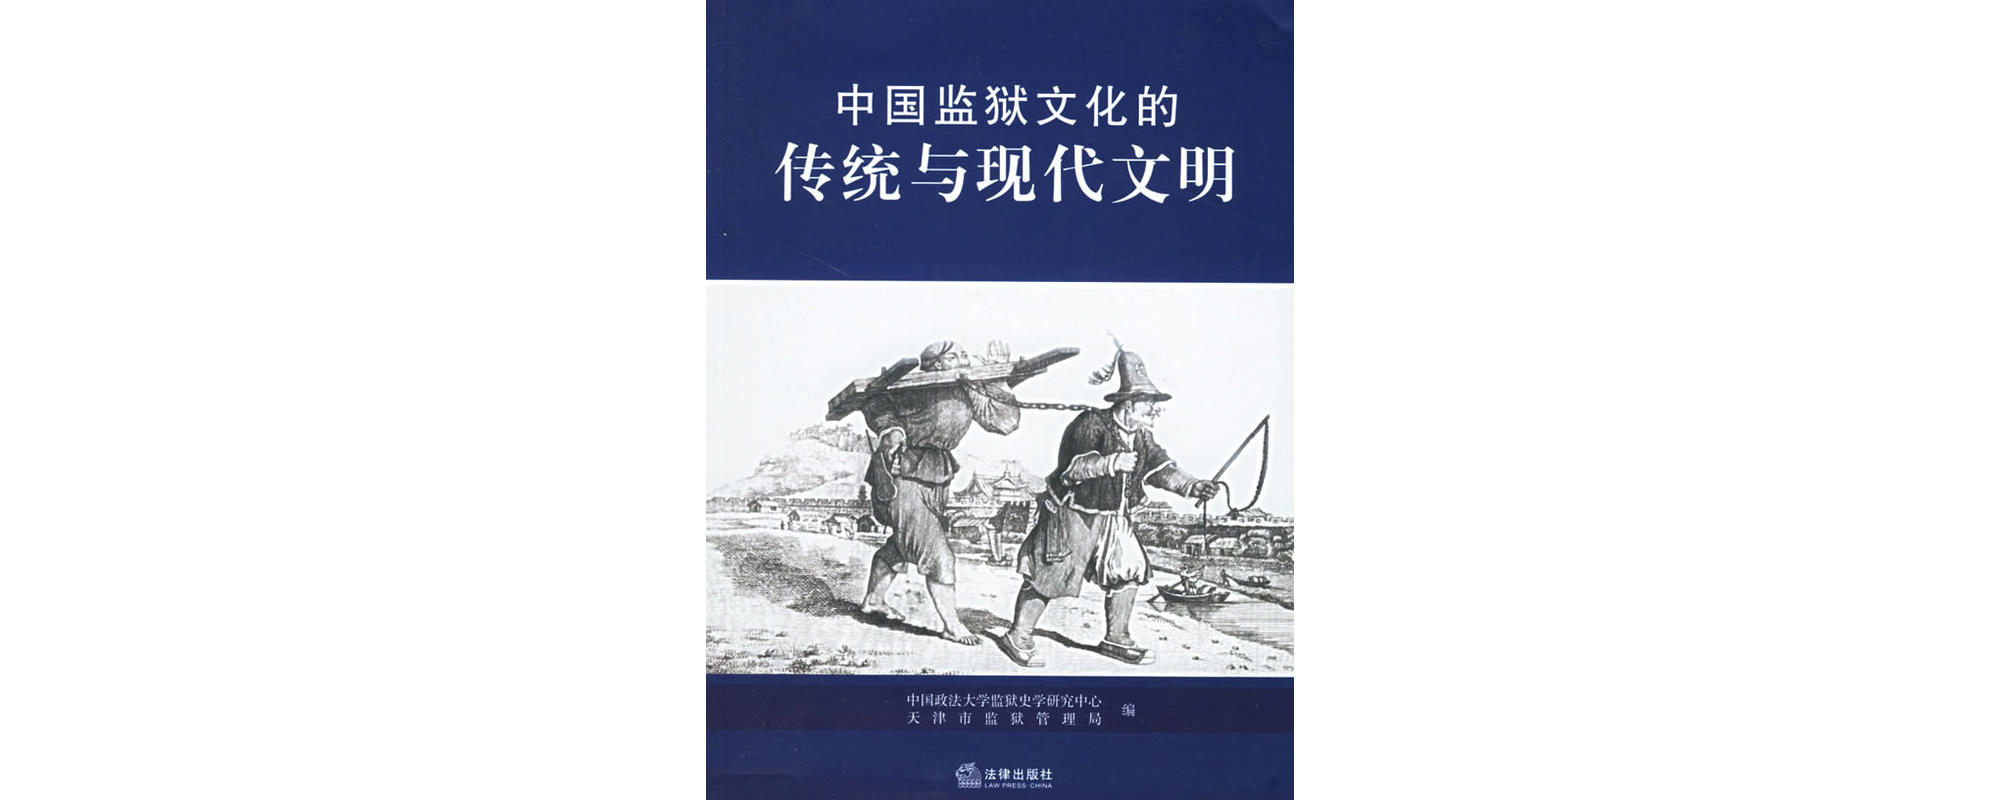 中國監獄文化的傳統與現代文明